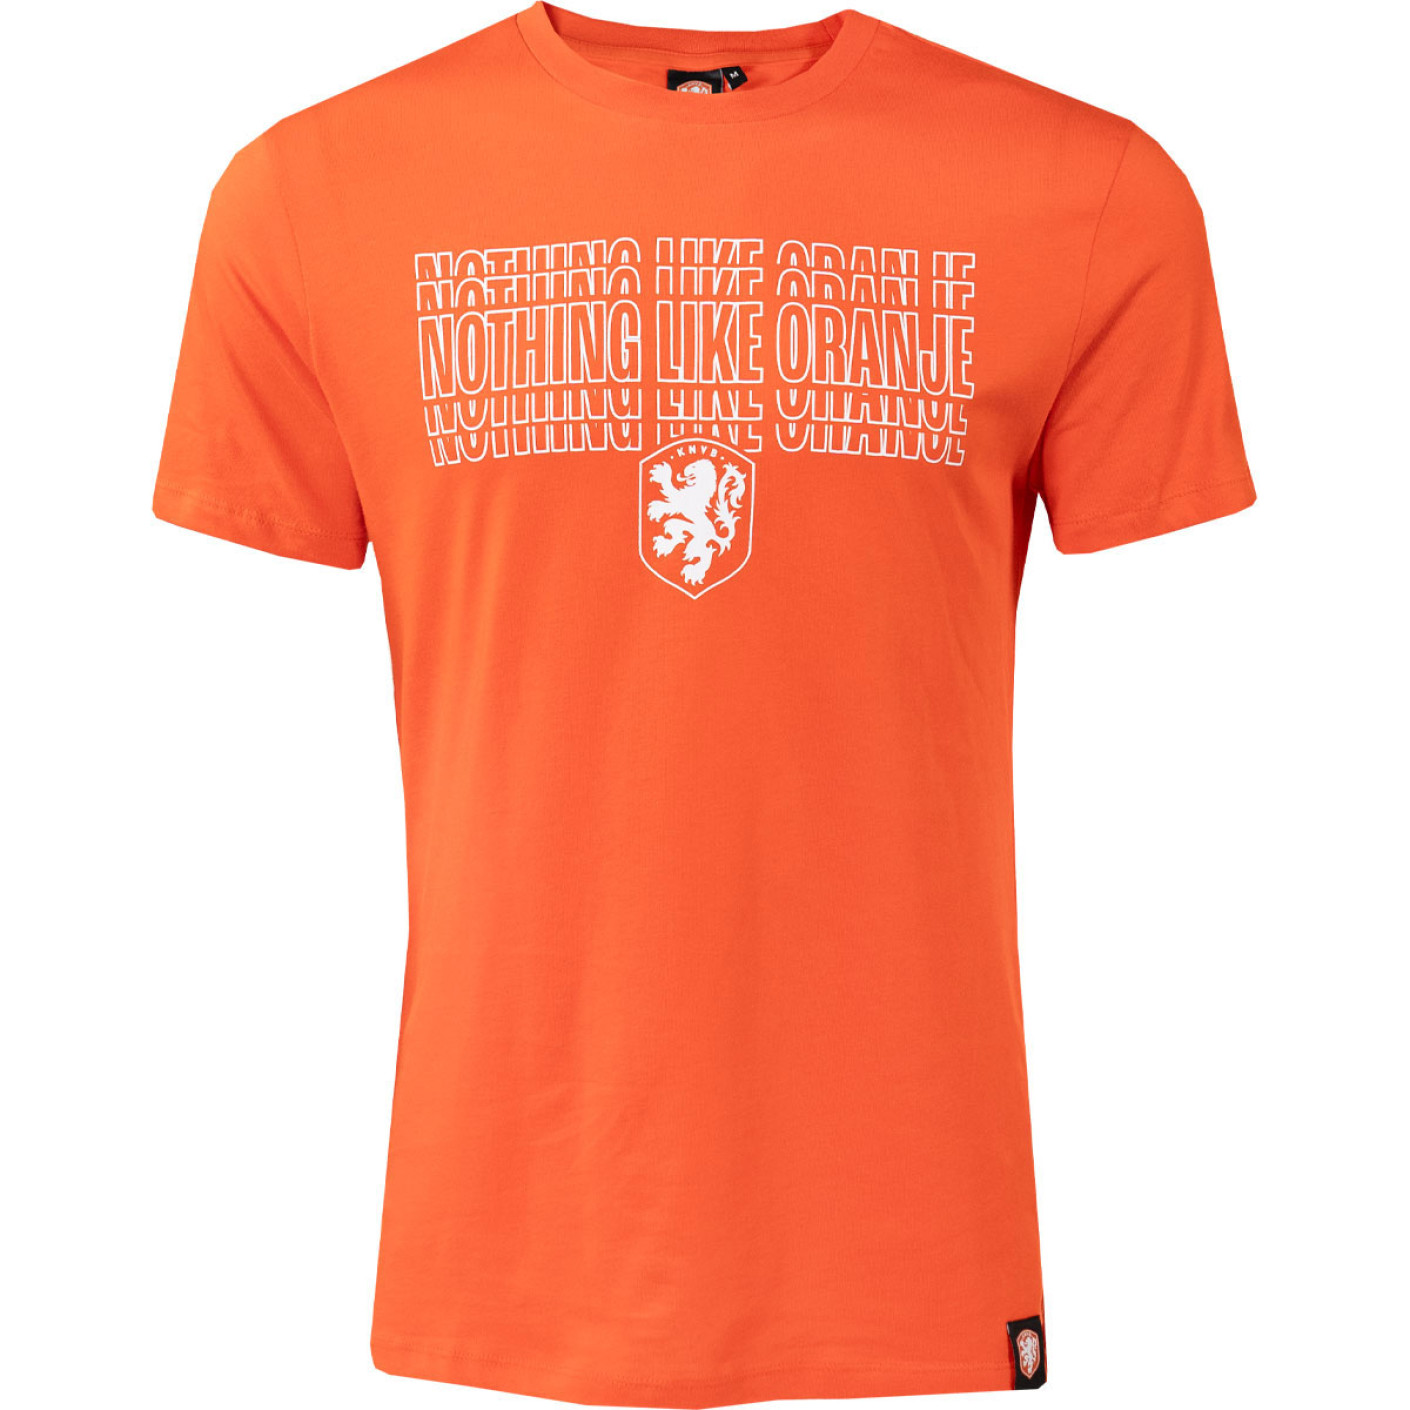 KNVB T-shirt Nothing Like Oranje Kids Oranje